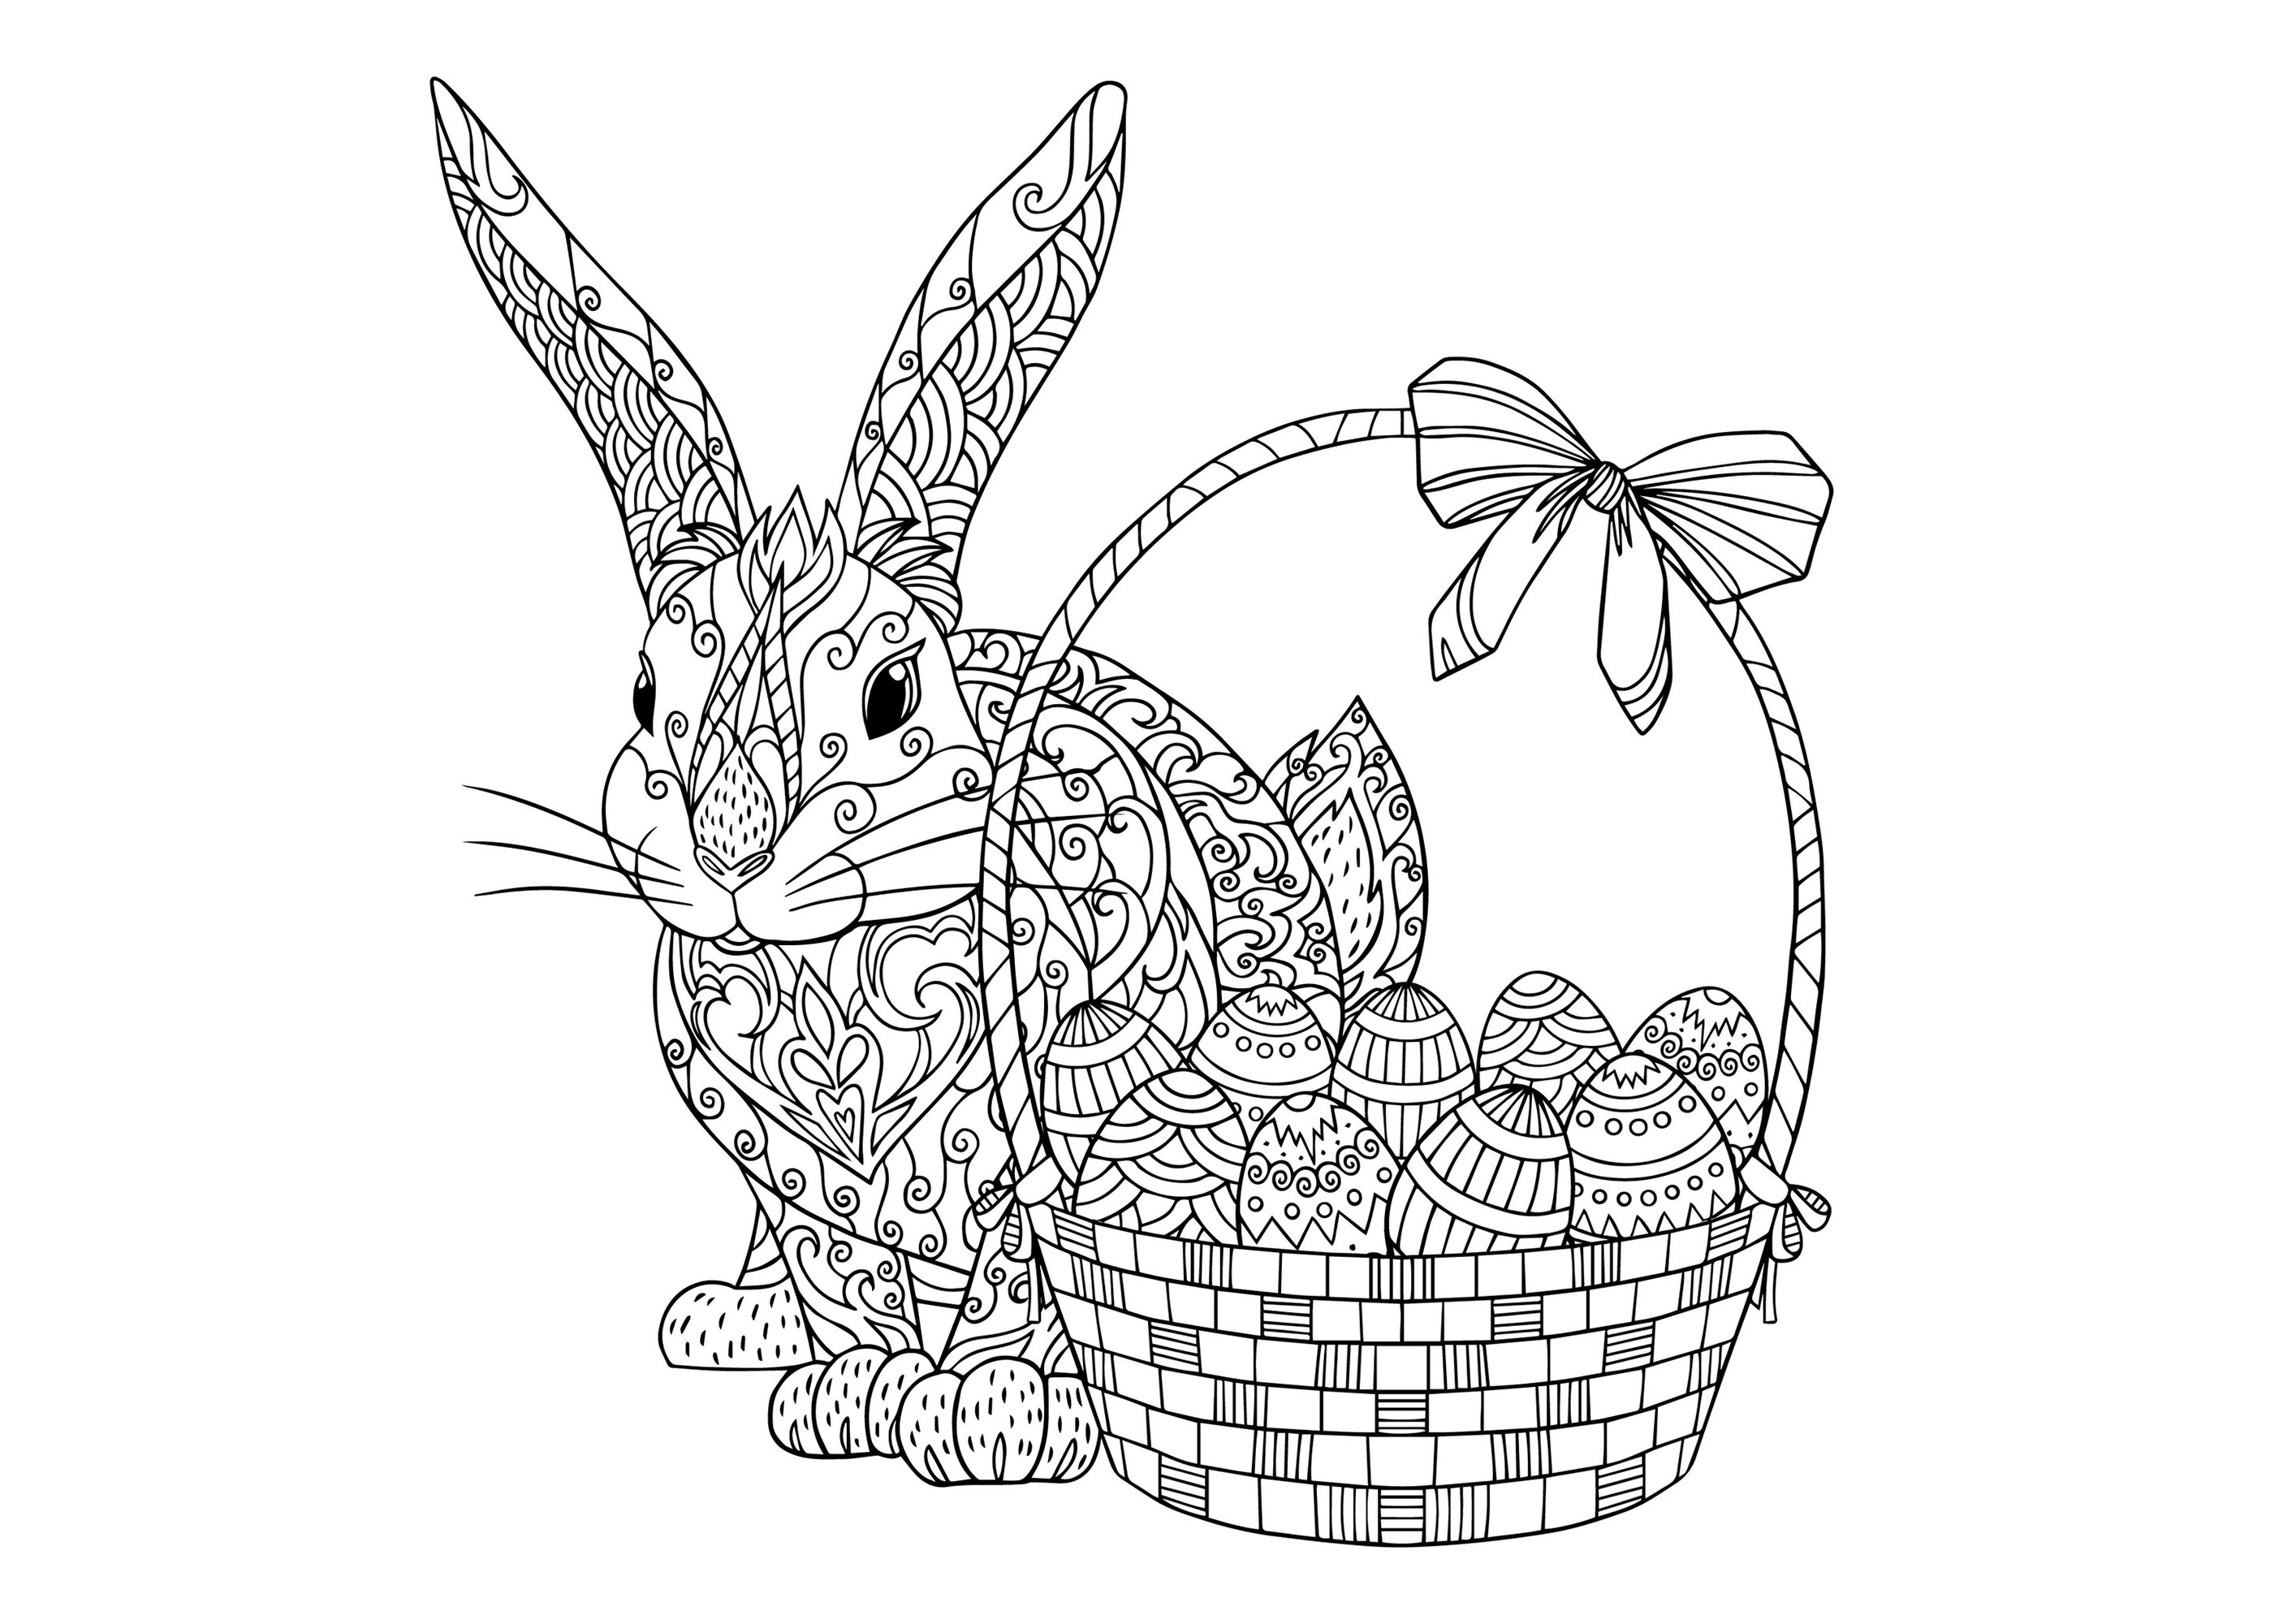 Coelhinho da Páscoa com cesto com bonitos ovos com padrões simples e diversos, Artista : Daniellabelaya   Fonte : 123rf